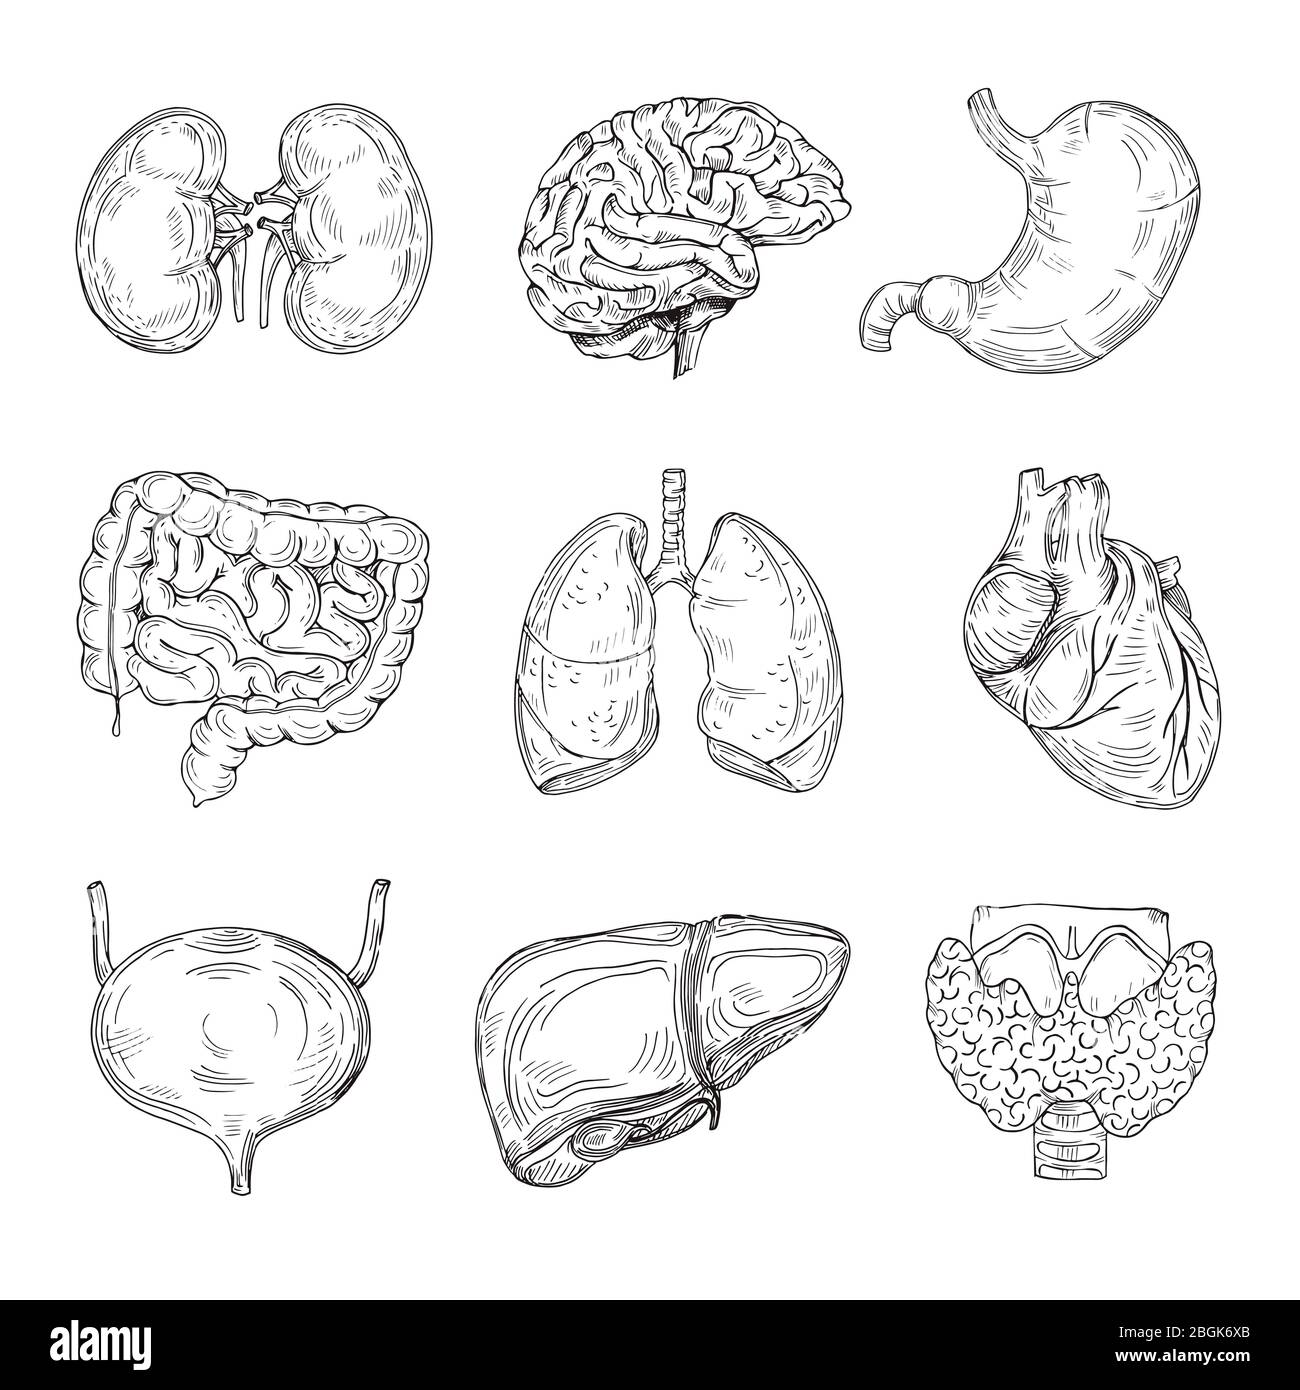 Menschliche innere Organe. Hand gezogenes Gehirn, Herz und Nieren, Magen und Blase. Skizze medizinische isolierte Vektor Illustration. Darm Organ der Sammlung, innere Verdauung Stock Vektor